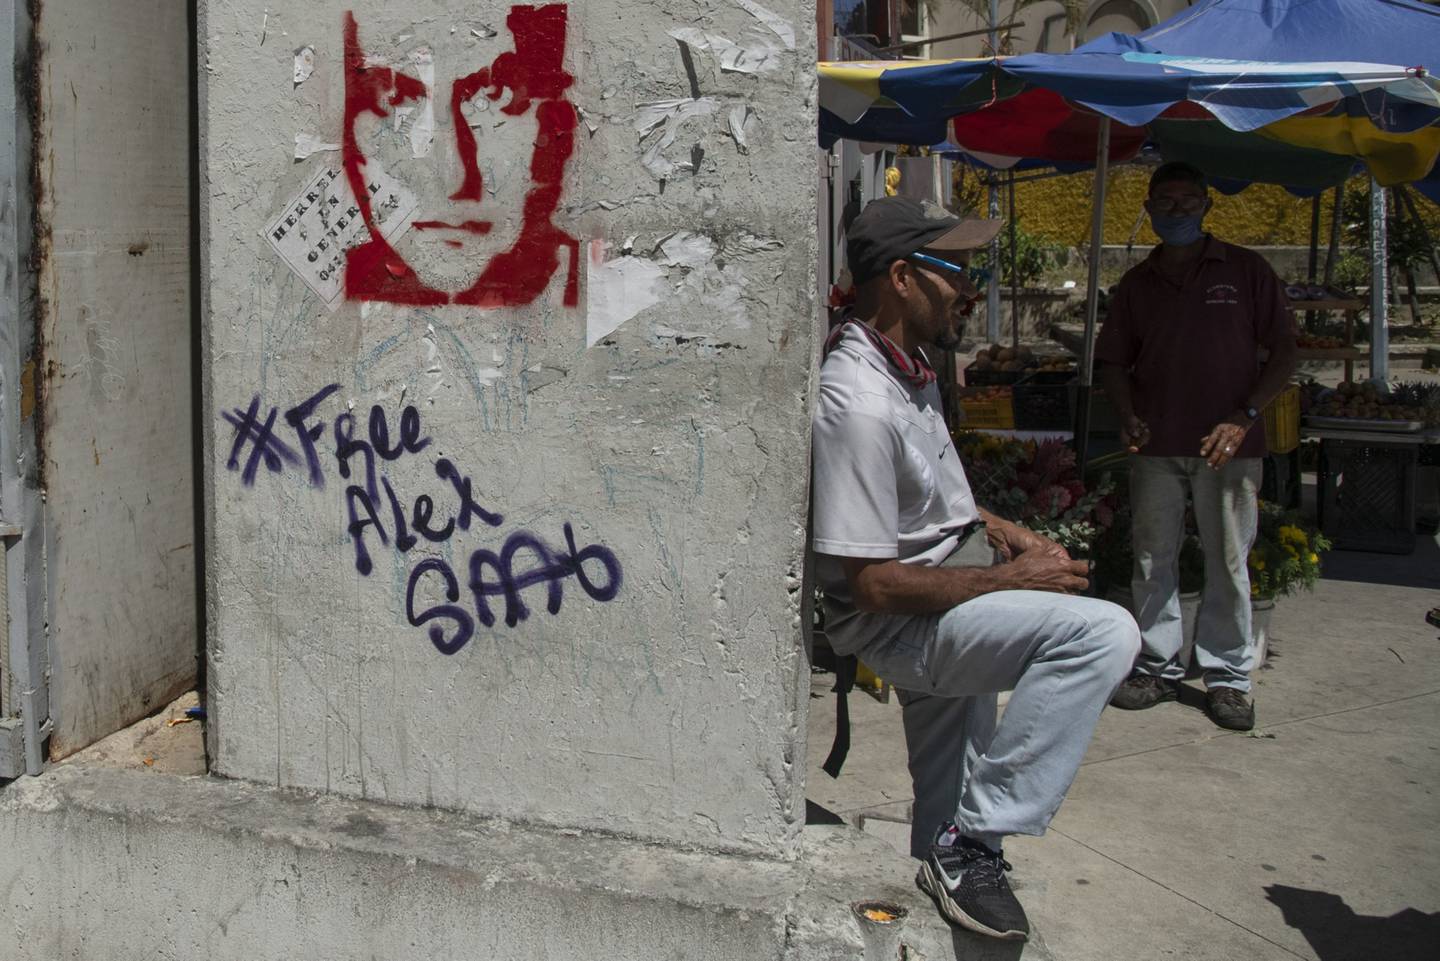 Un vendedor se sienta junto a una pared con un graffiti que dice "Liberen a Alex Saab", en el Centro de Caracas, Venezuela, el jueves 4 de febrero de 2021.dfd